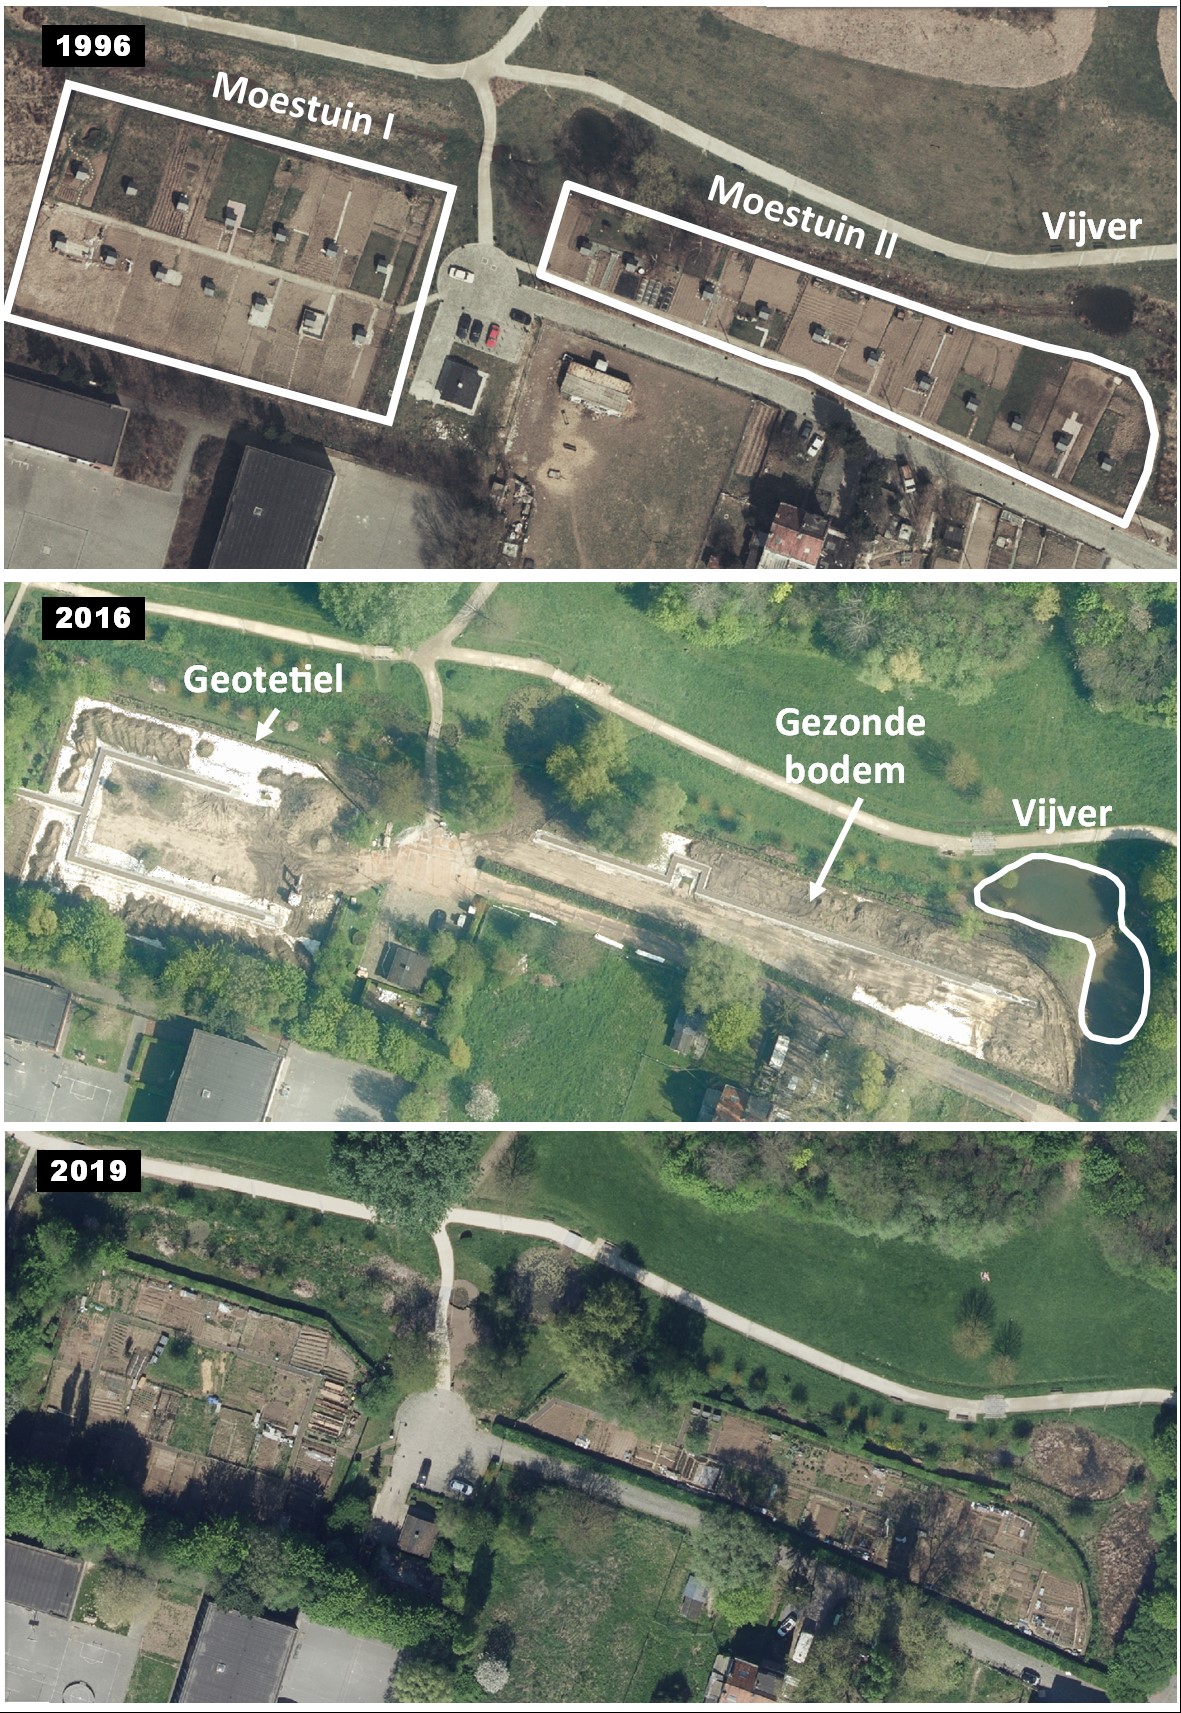 Luchtfoto's van de moestuin van het Schetbos  tussen 1996 en 2019